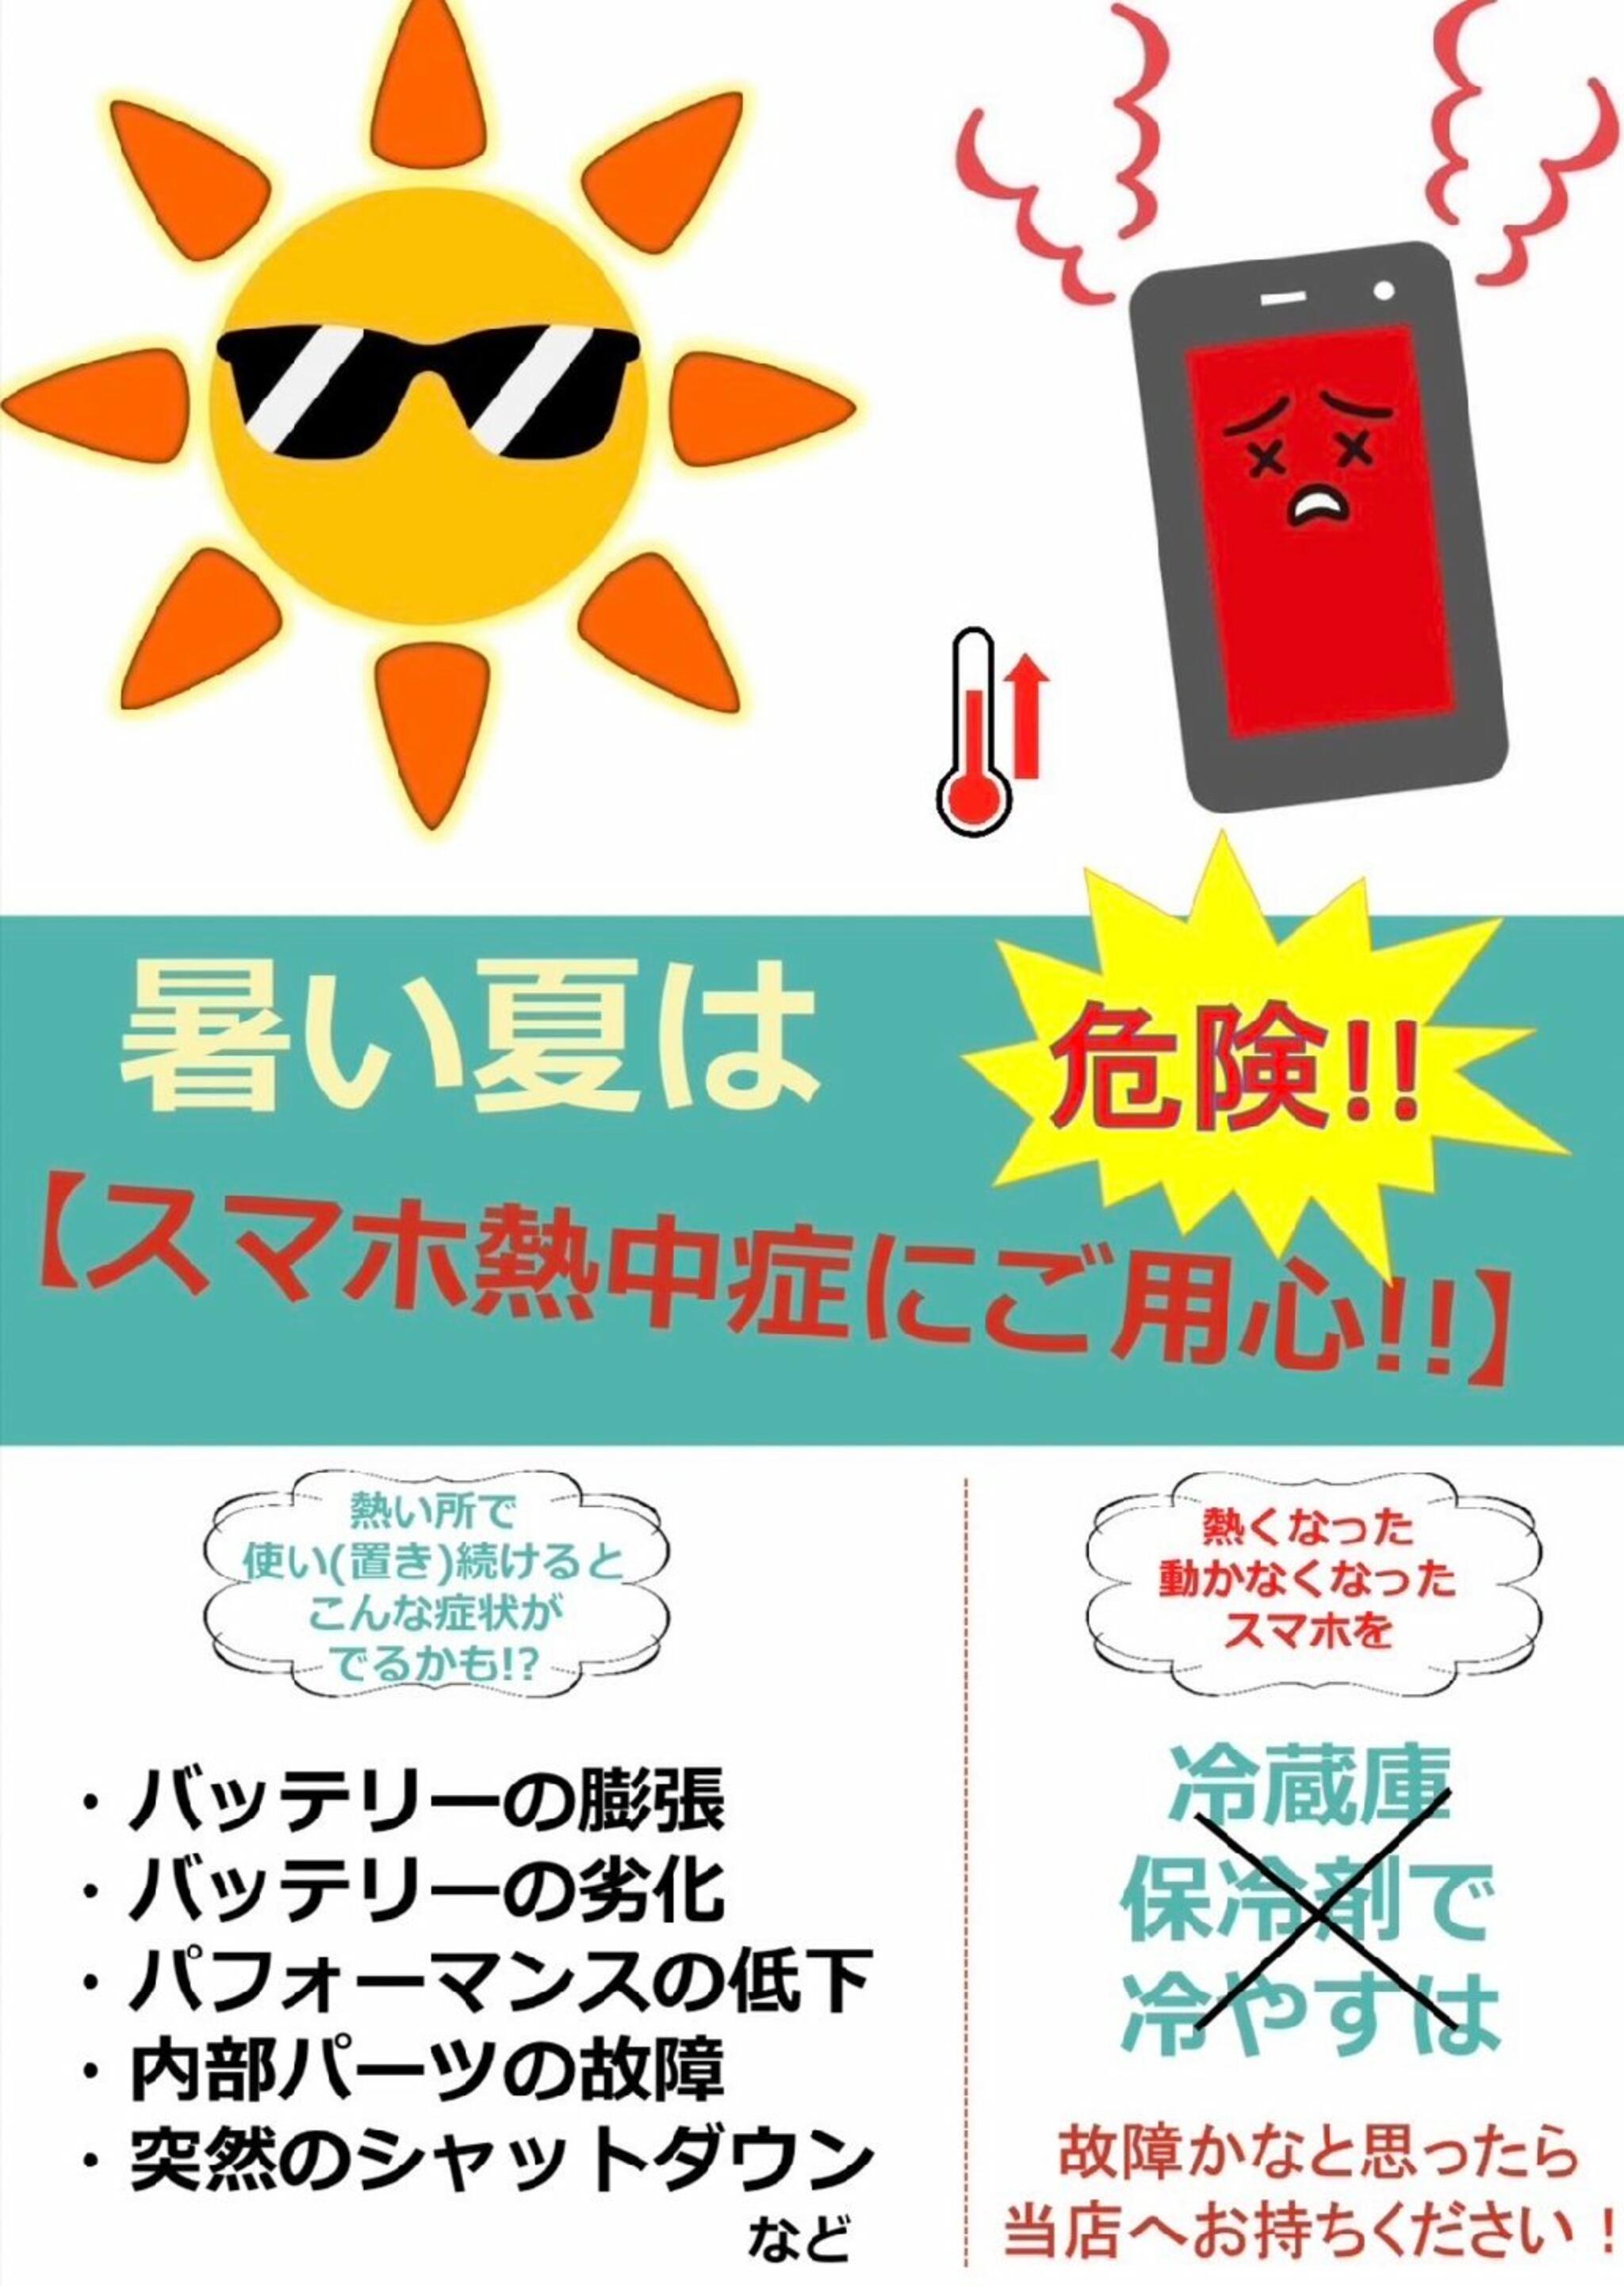 iPhone・iPad・Switch修理店 スマートクール イオンモール広島祇園店からのお知らせ(その iPhoneのバッテリー、膨張しちゃってませんか！？)に関する写真